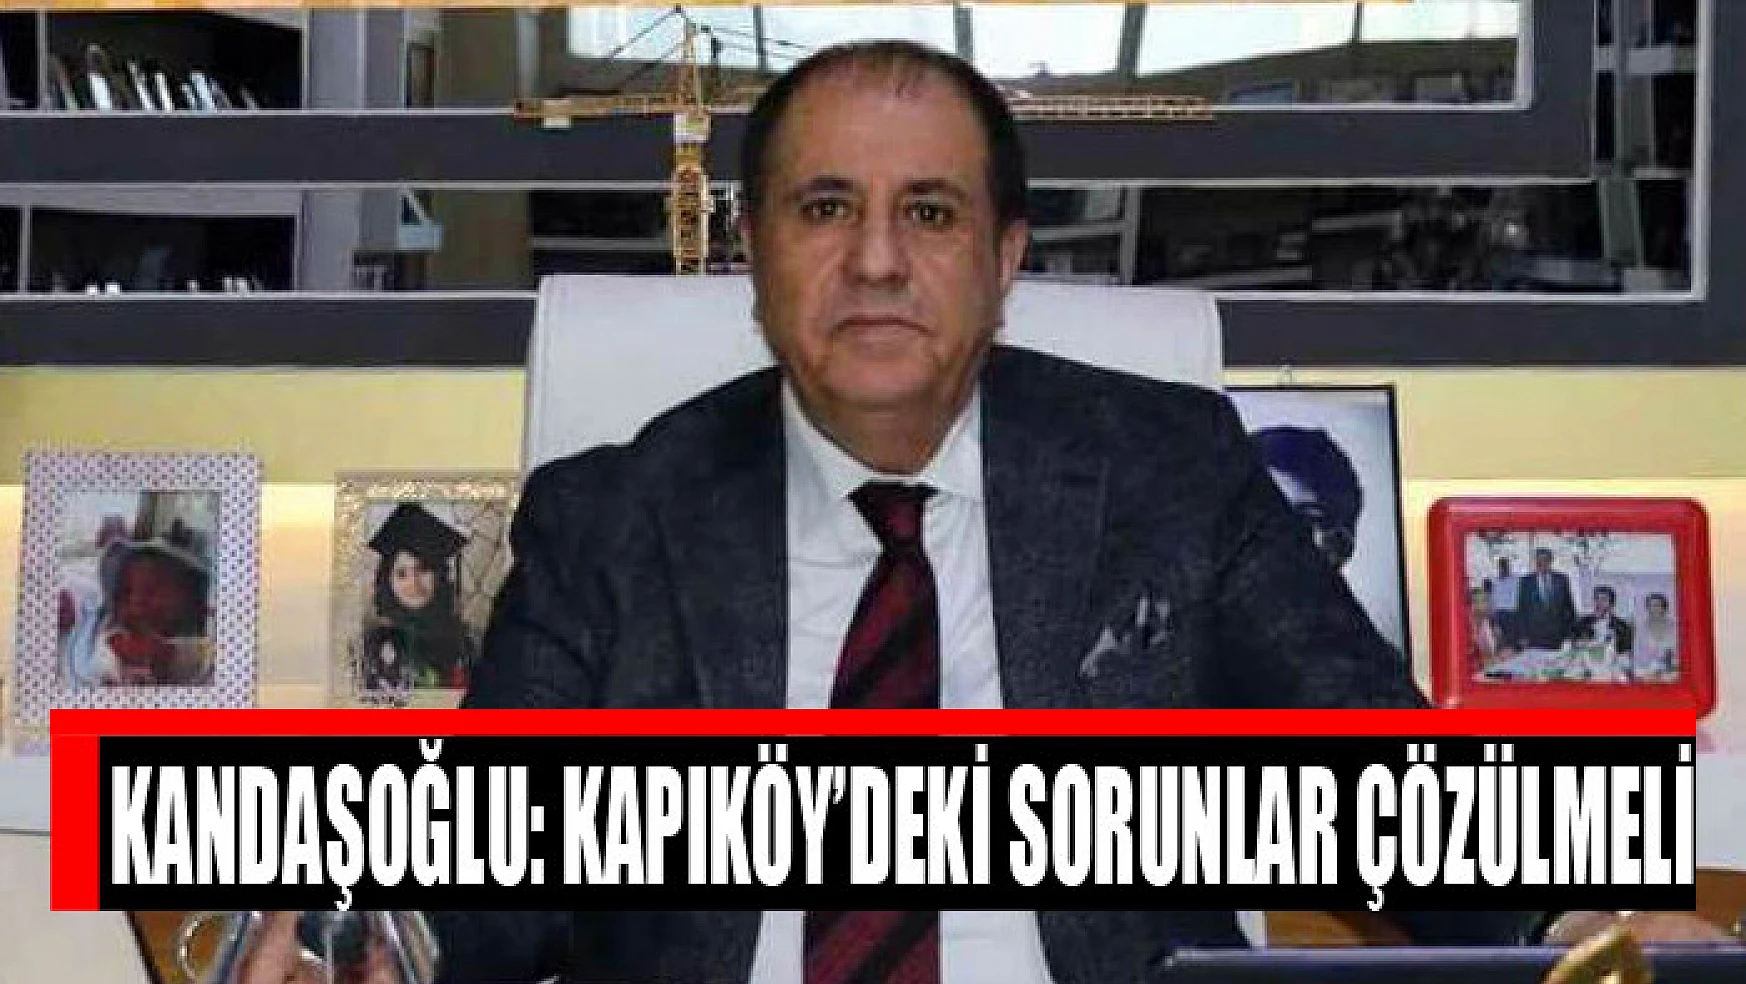 Kandaşoğlu: Kapıköy'deki sorunlar çözülmeli